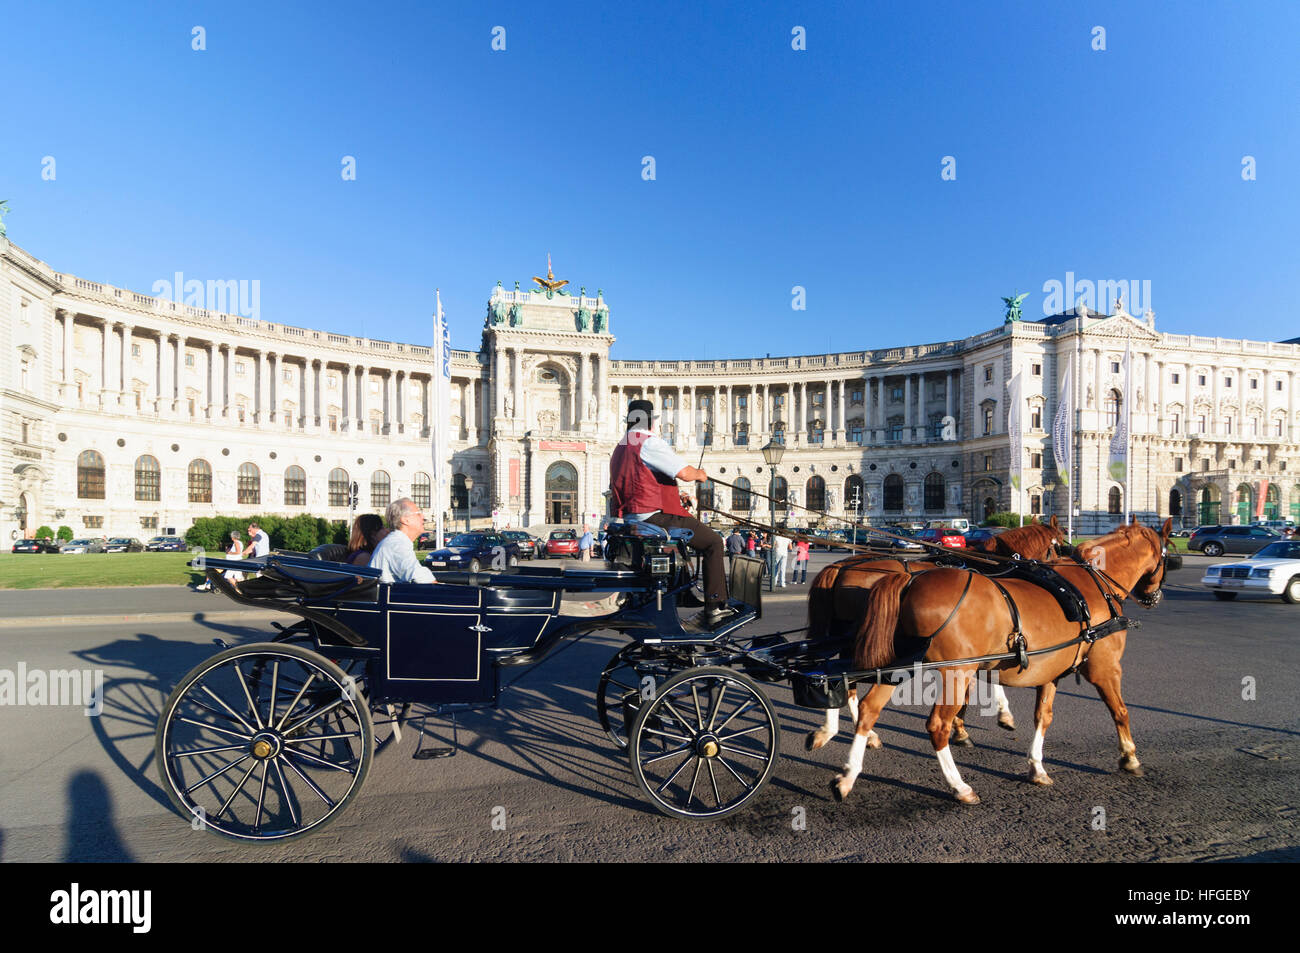 Wien, Vienne : Neue Burg (le sud-est de l'aile de la Hofburg) avec une statue Du Prince Eugene, Fiaker (cheval), Wien, Autriche Banque D'Images